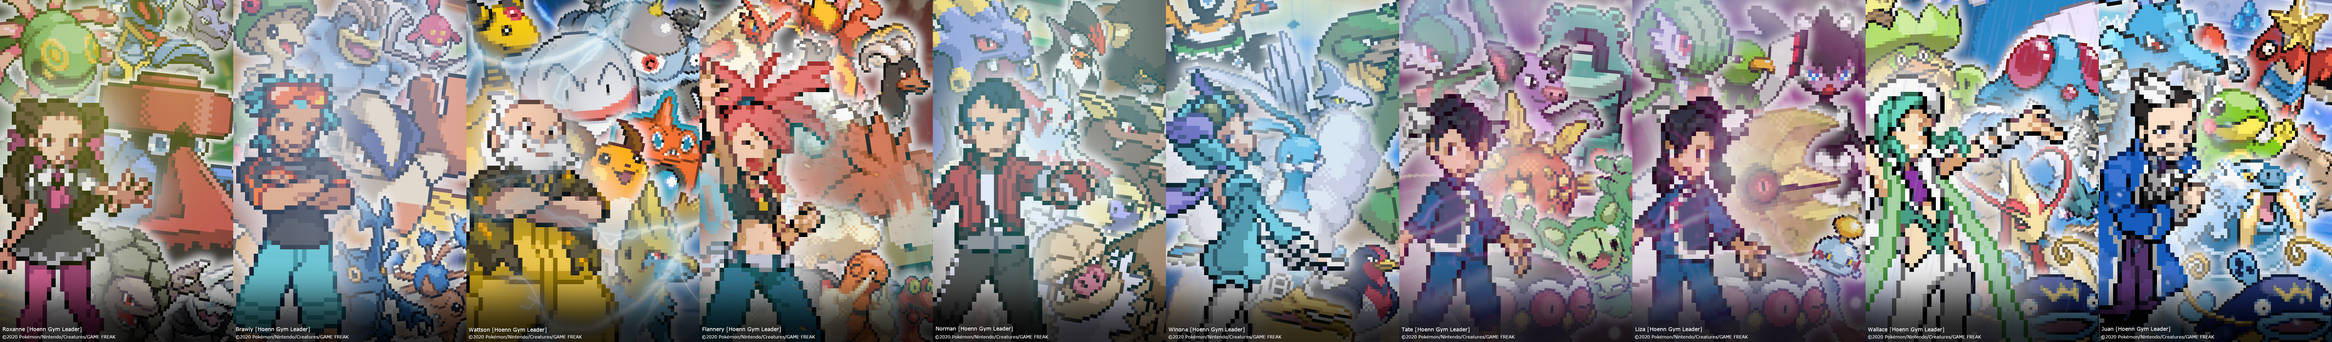 Pokemon - Hoenn Gym Leaders (Gen III-VI) Poster by Mugen-SenseiStudios ...